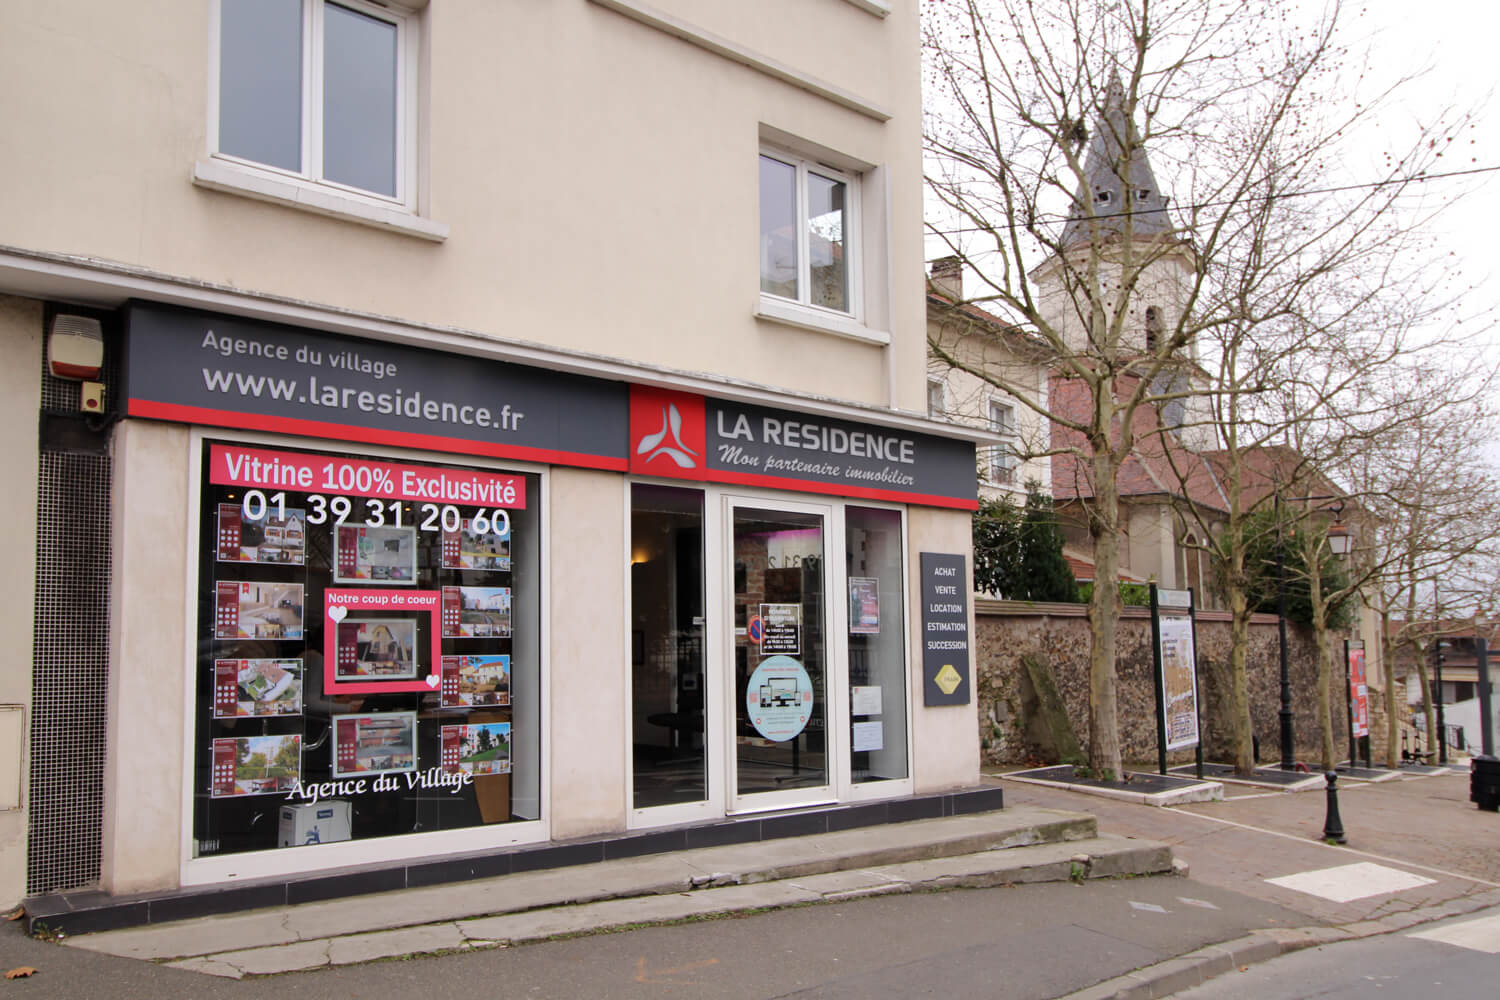 Évaluation et estimation immobilière gratuite en ligne à Montigny les Cormeilles - LA RESIDENCE